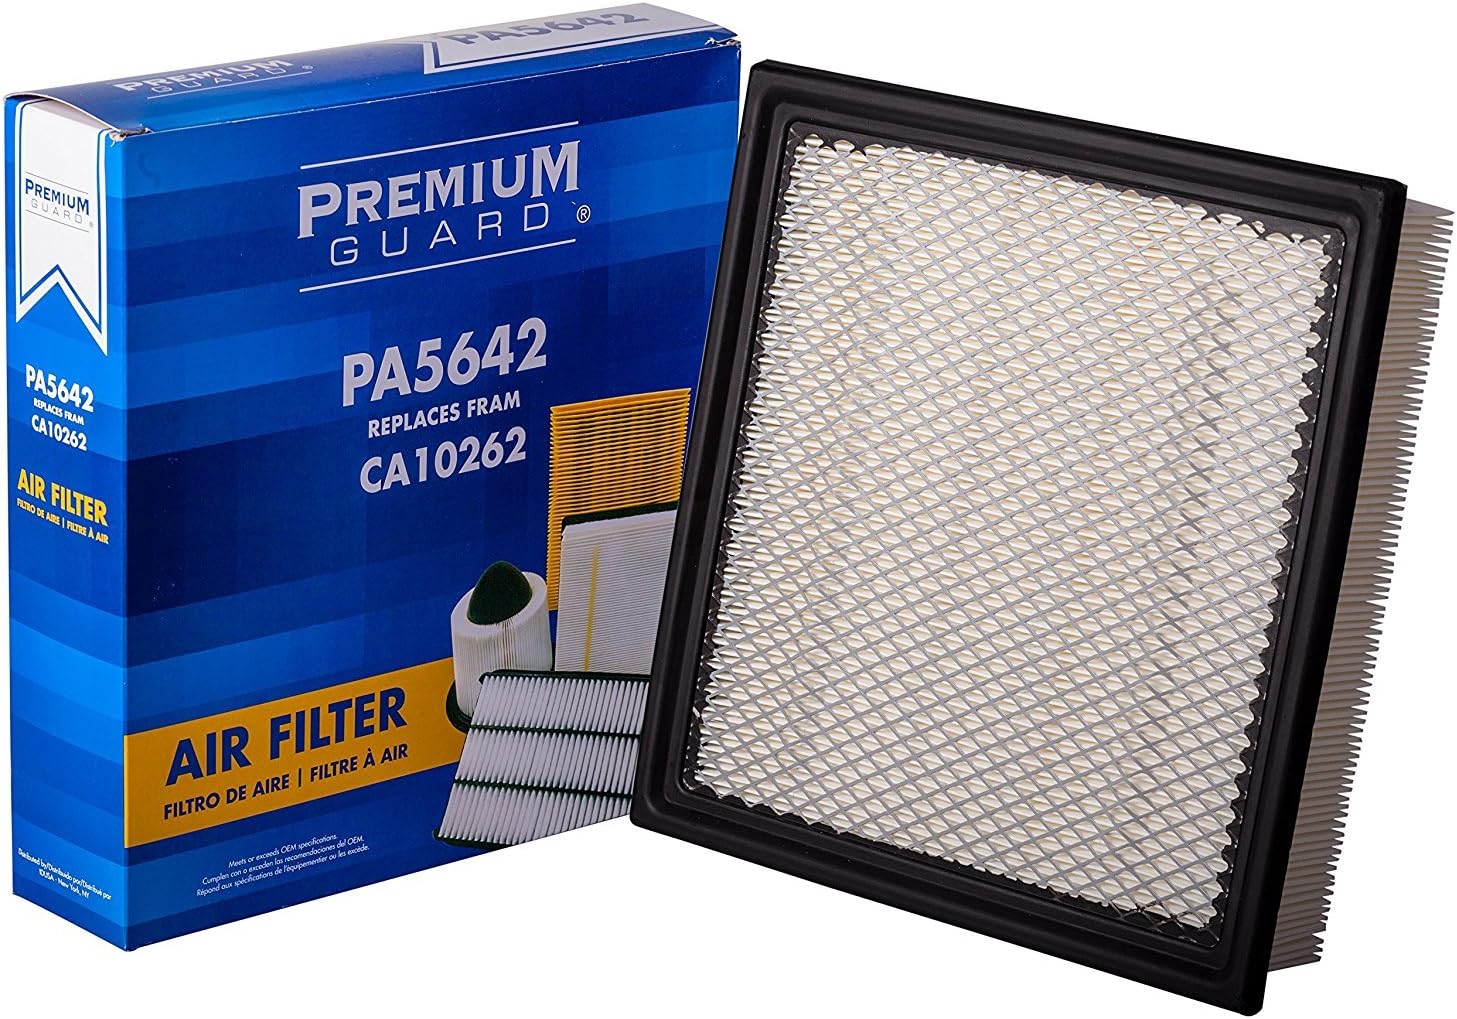 Premium Guard PA5642 Air Filter